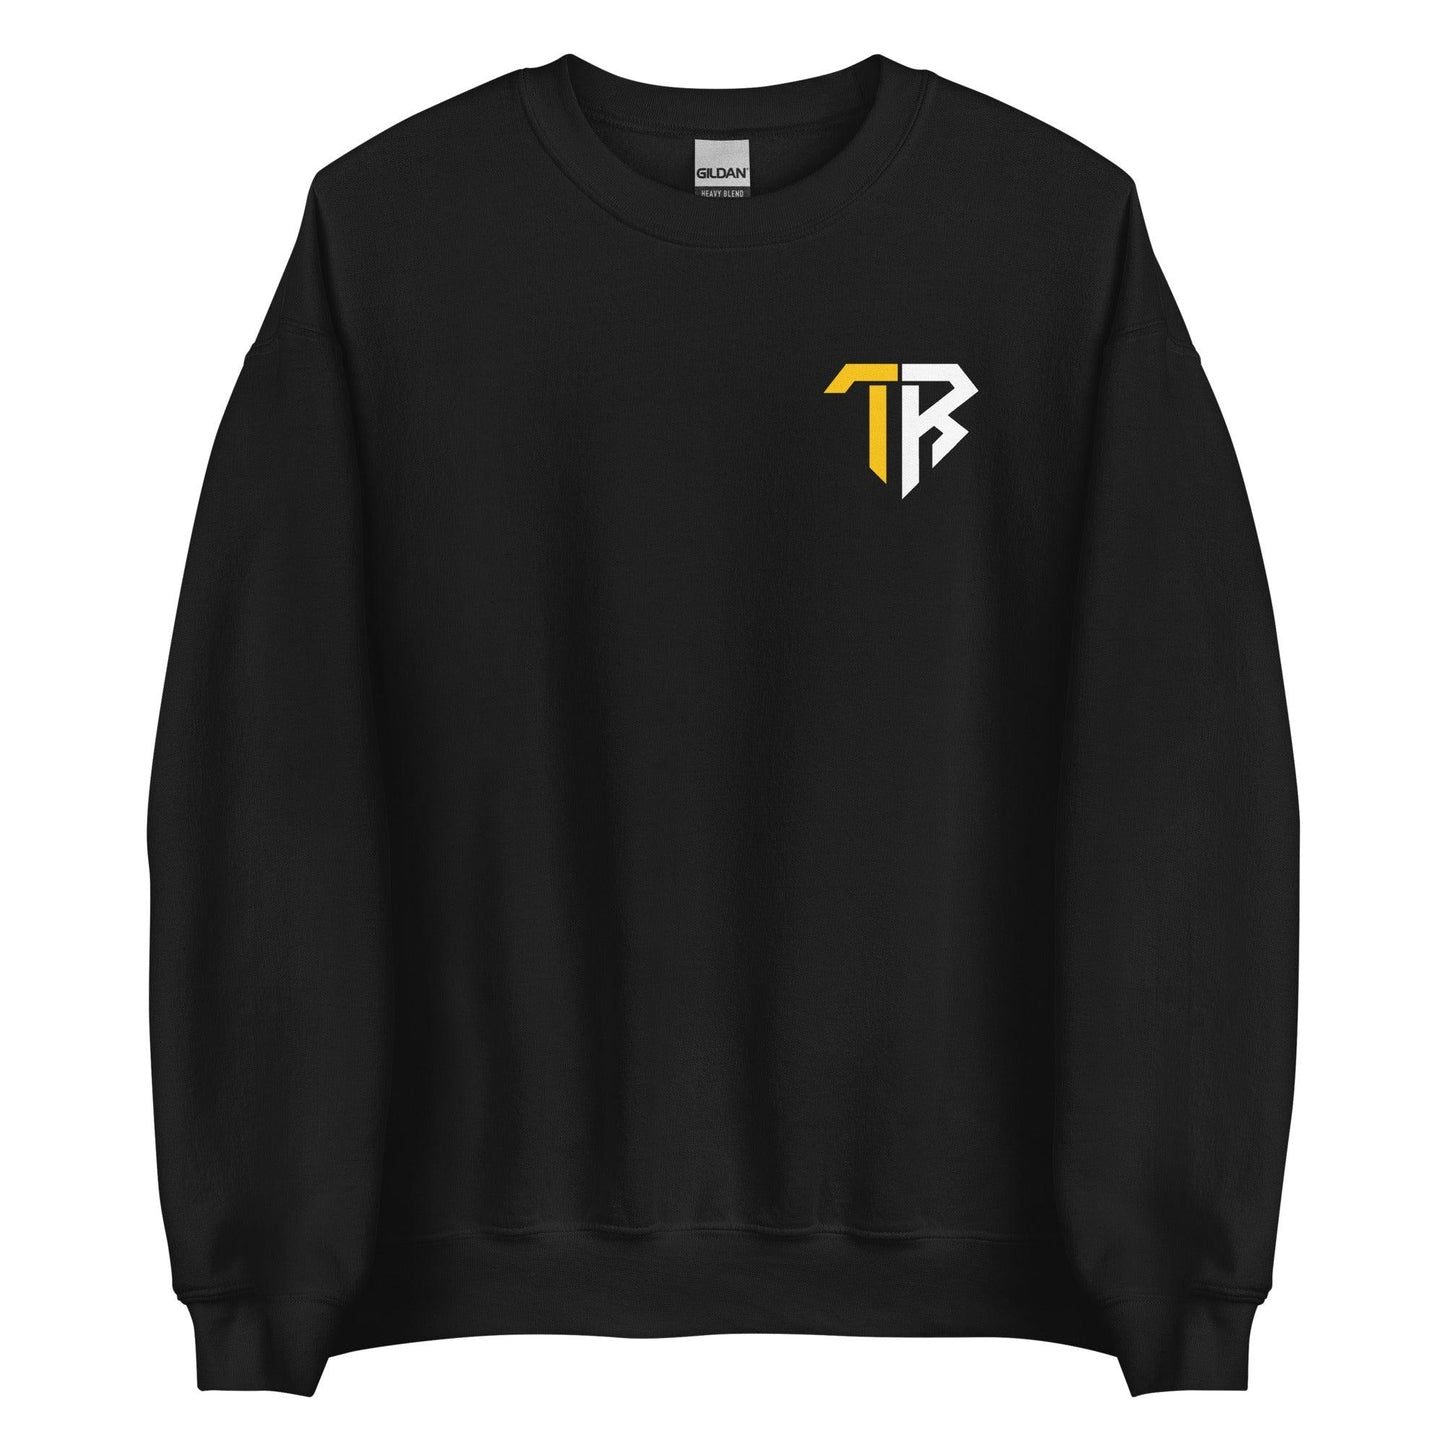 Taya Robinson “TR” Sweatshirt - Fan Arch